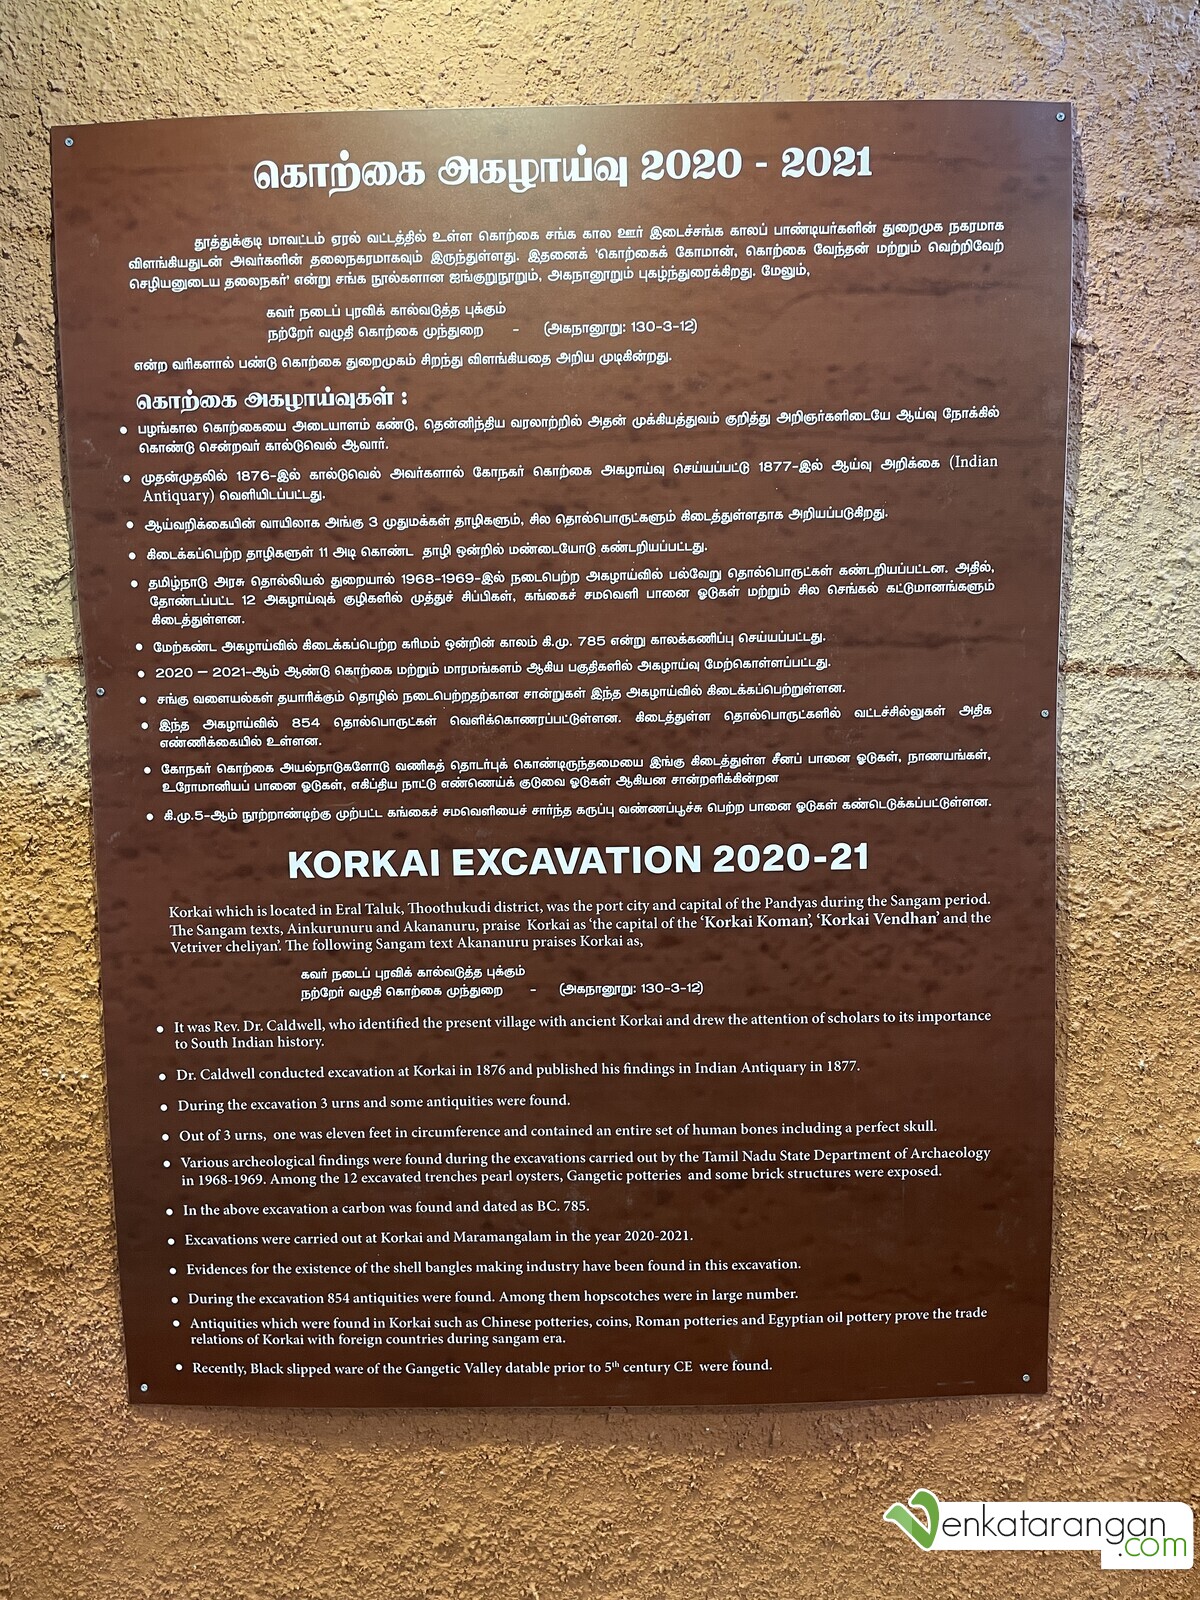 கொற்கை அகழாய்வு 2020-21 (Korkai Excavation 2020-21)